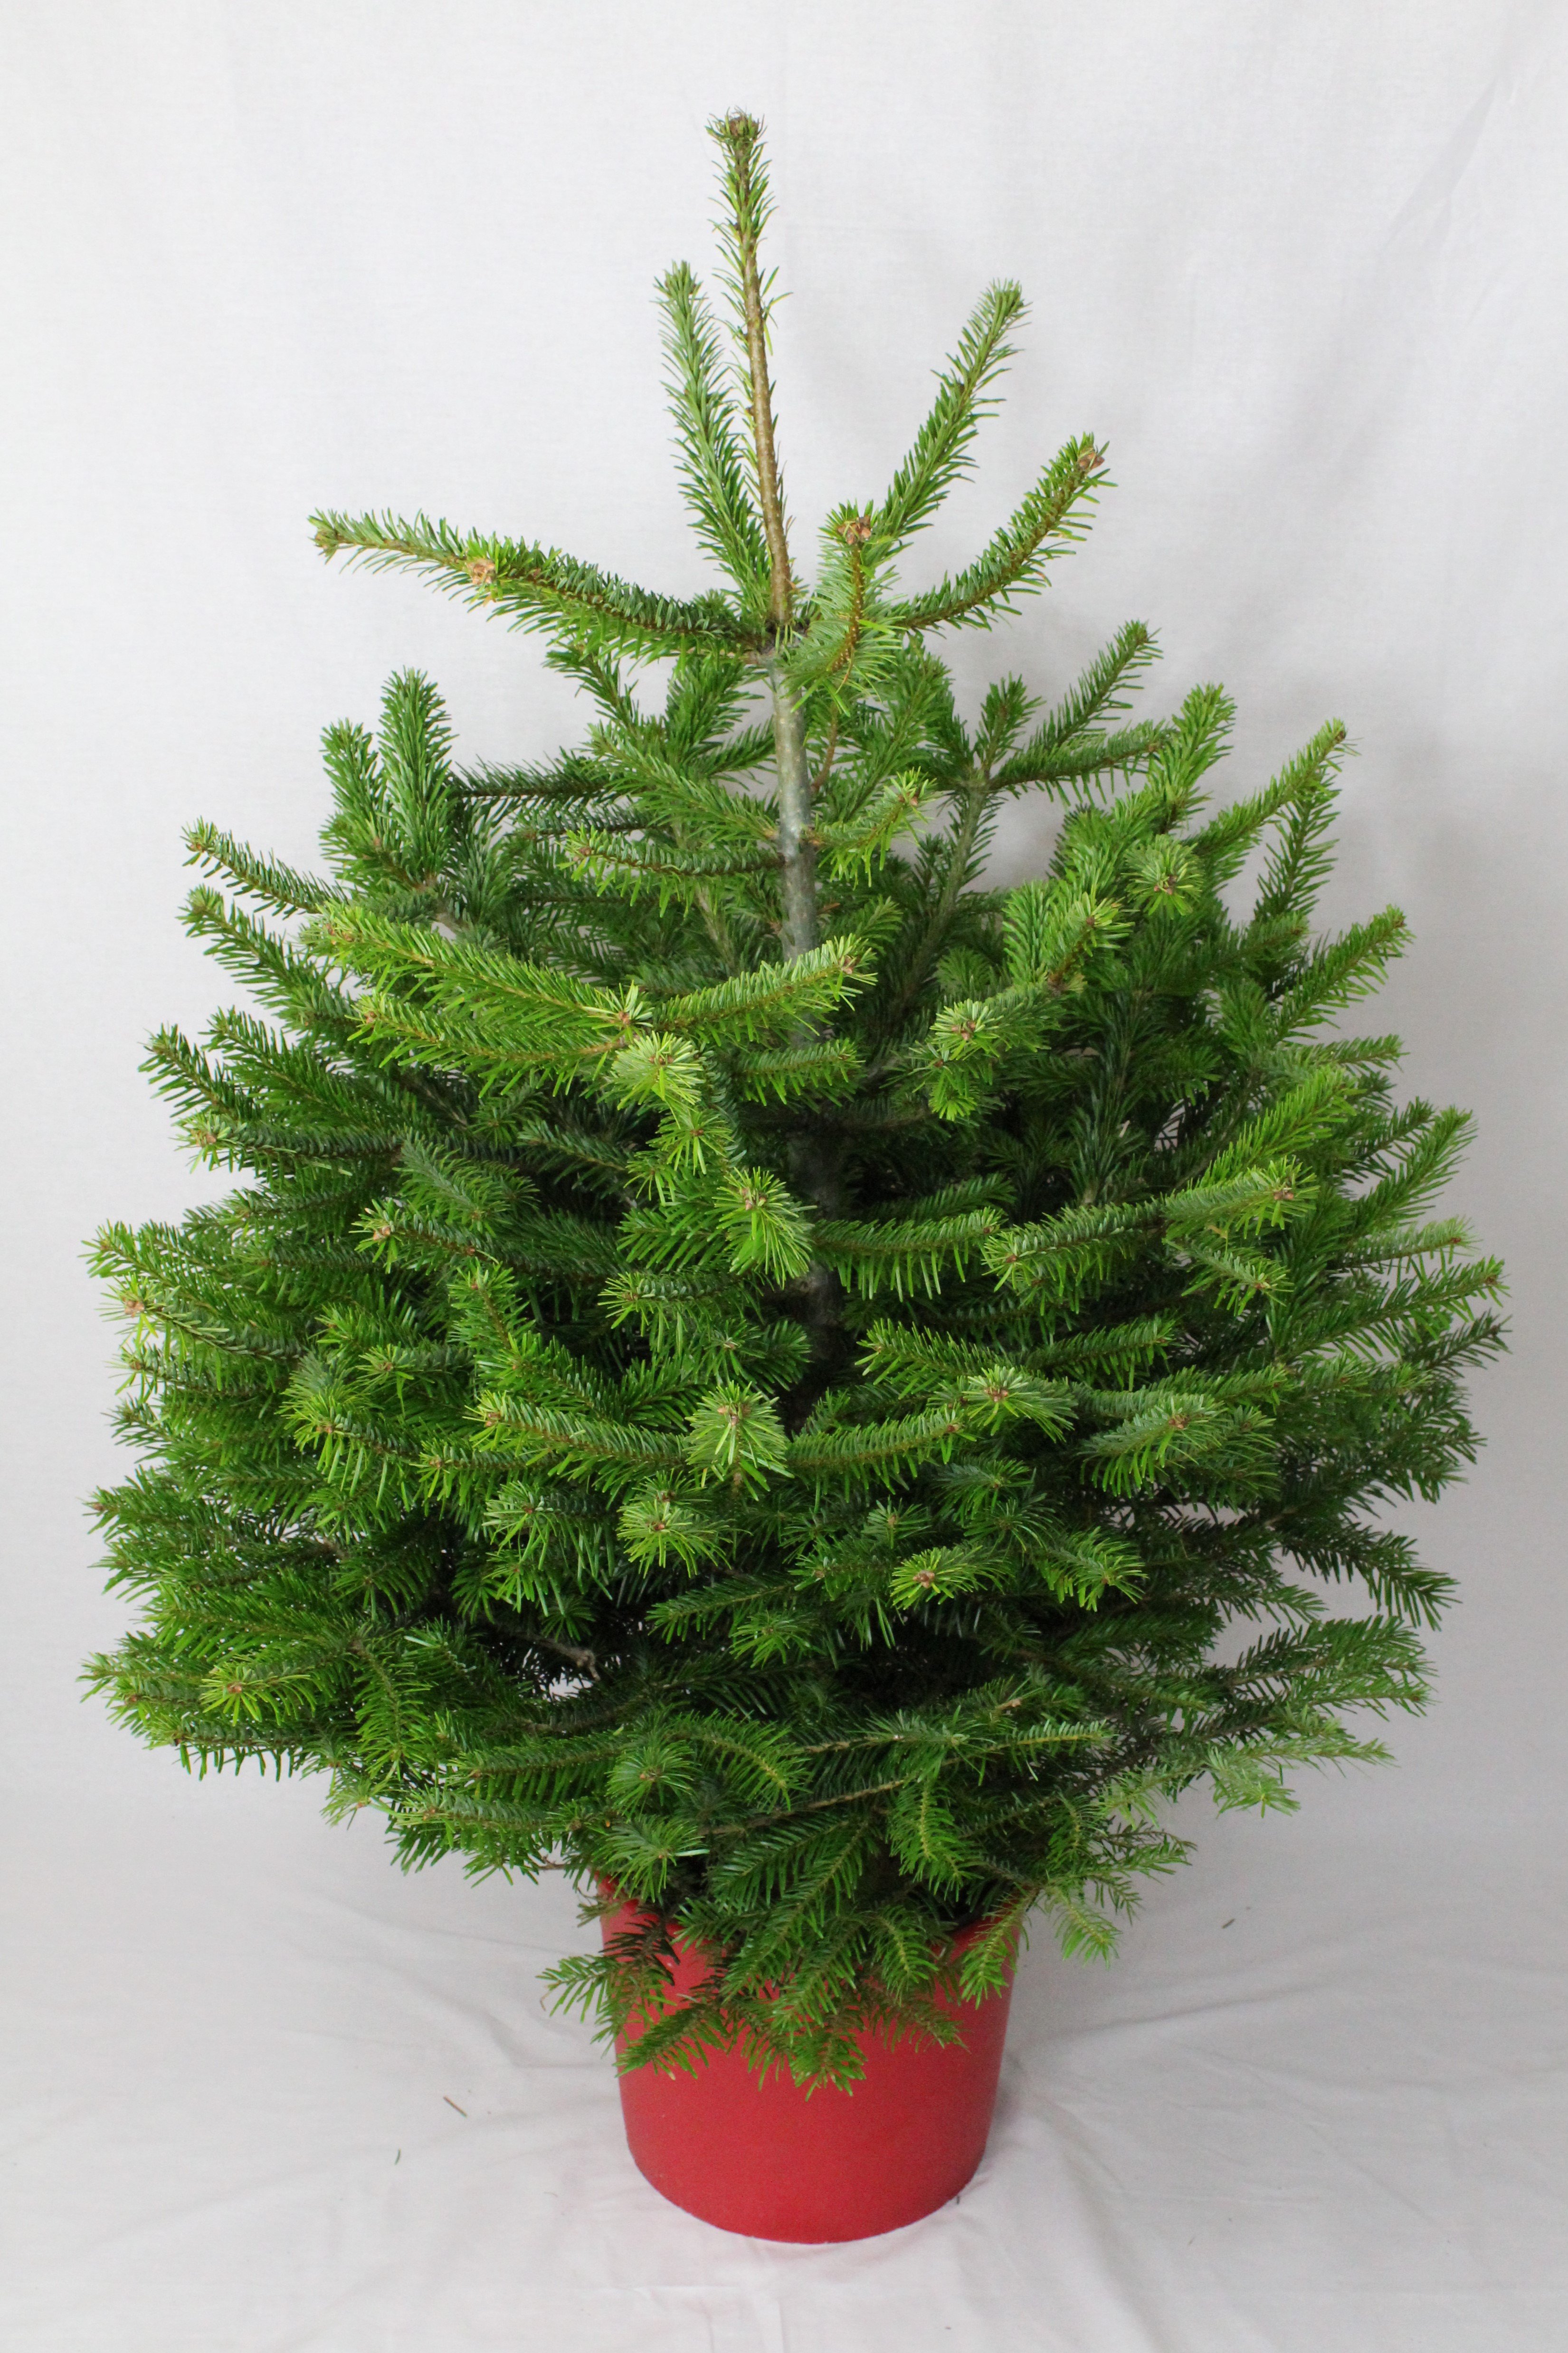 Pot Grown Nordmann Fir Christmas Tree - Bellasize Christmas Trees